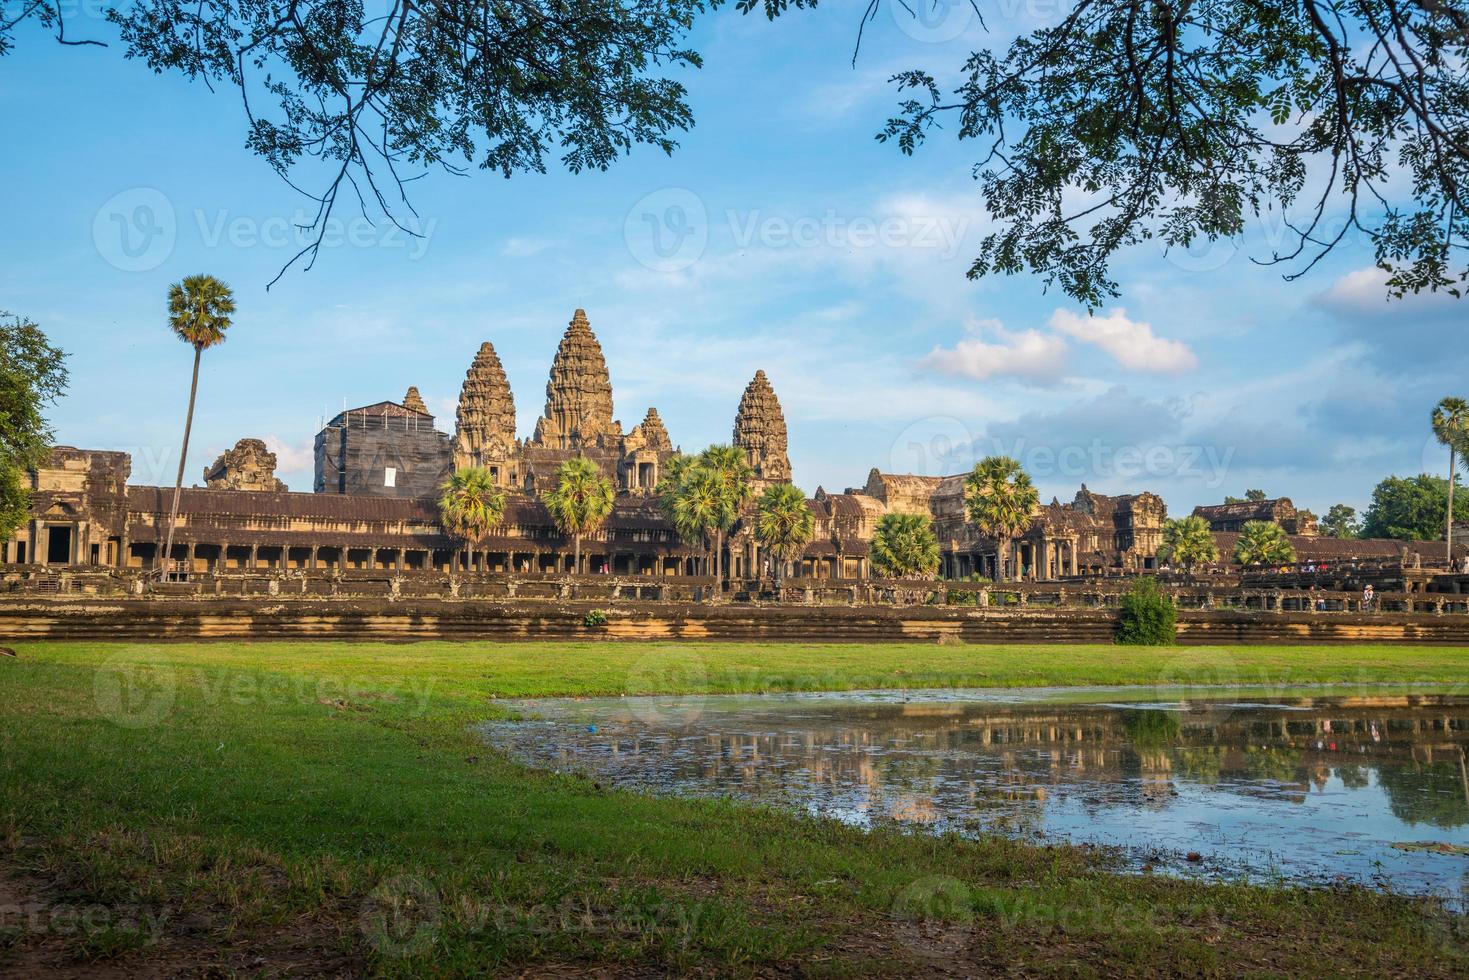 angkor wat ist eine tempelanlage in kambodscha und das größte religiöse denkmal der welt. befindet sich in der kambodschanischen provinz siem reap. foto